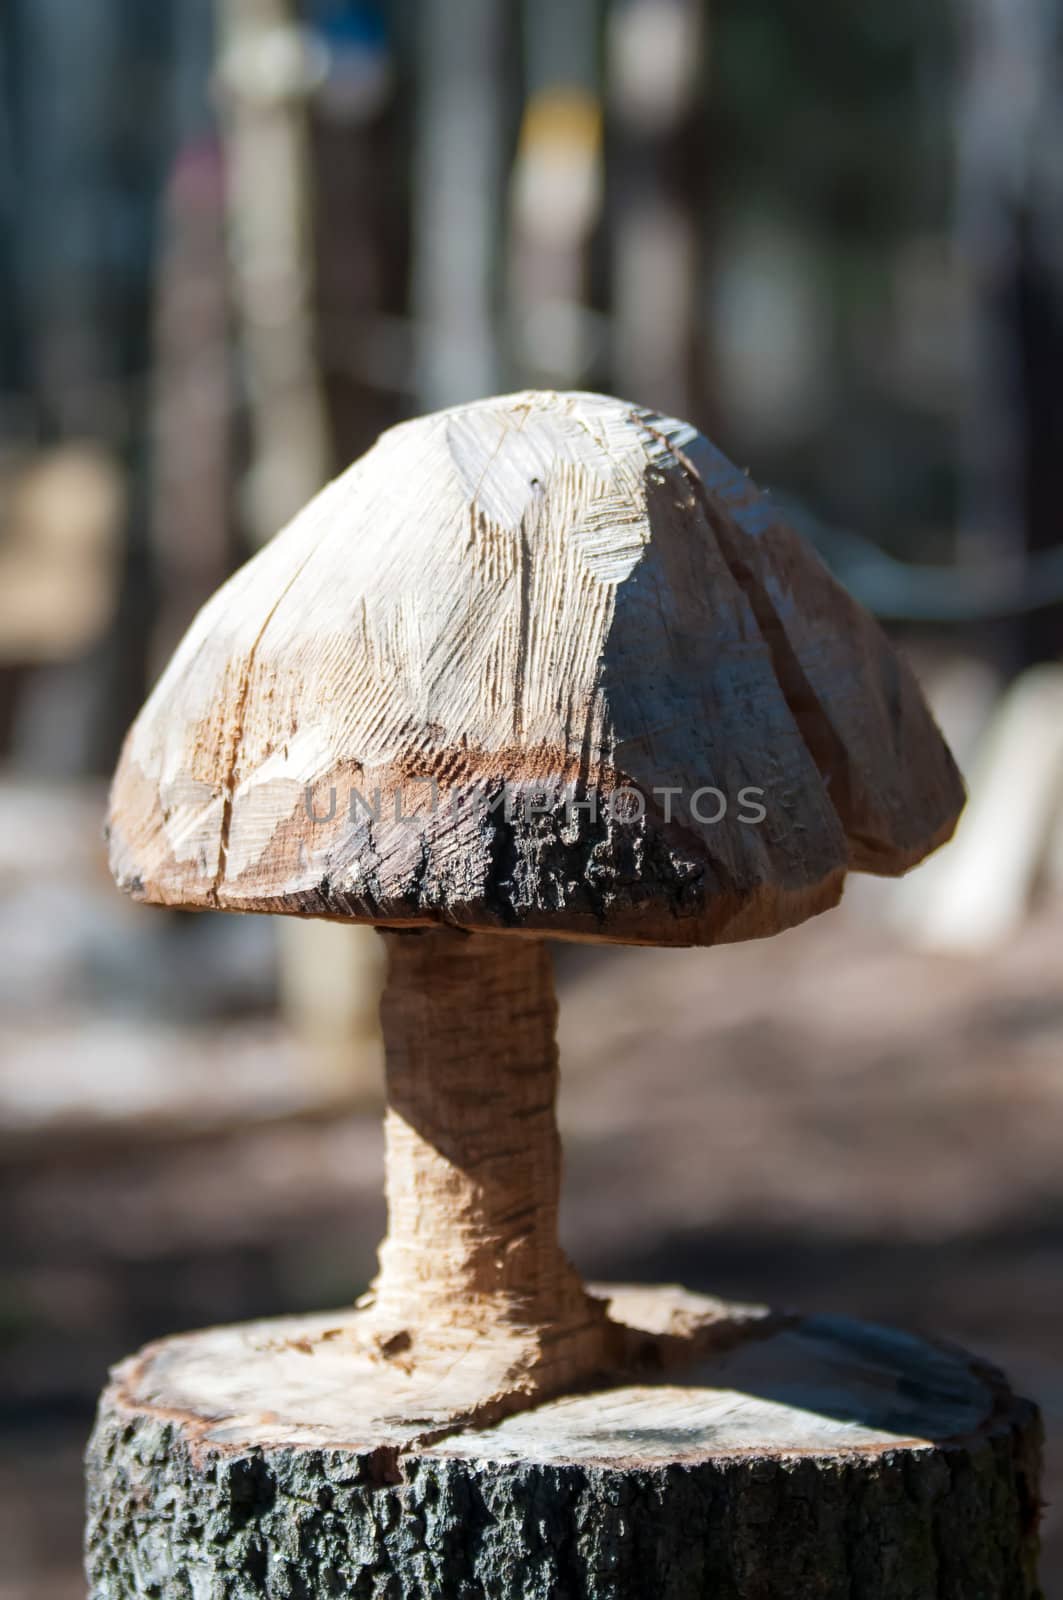 carved mushroom from tree stump